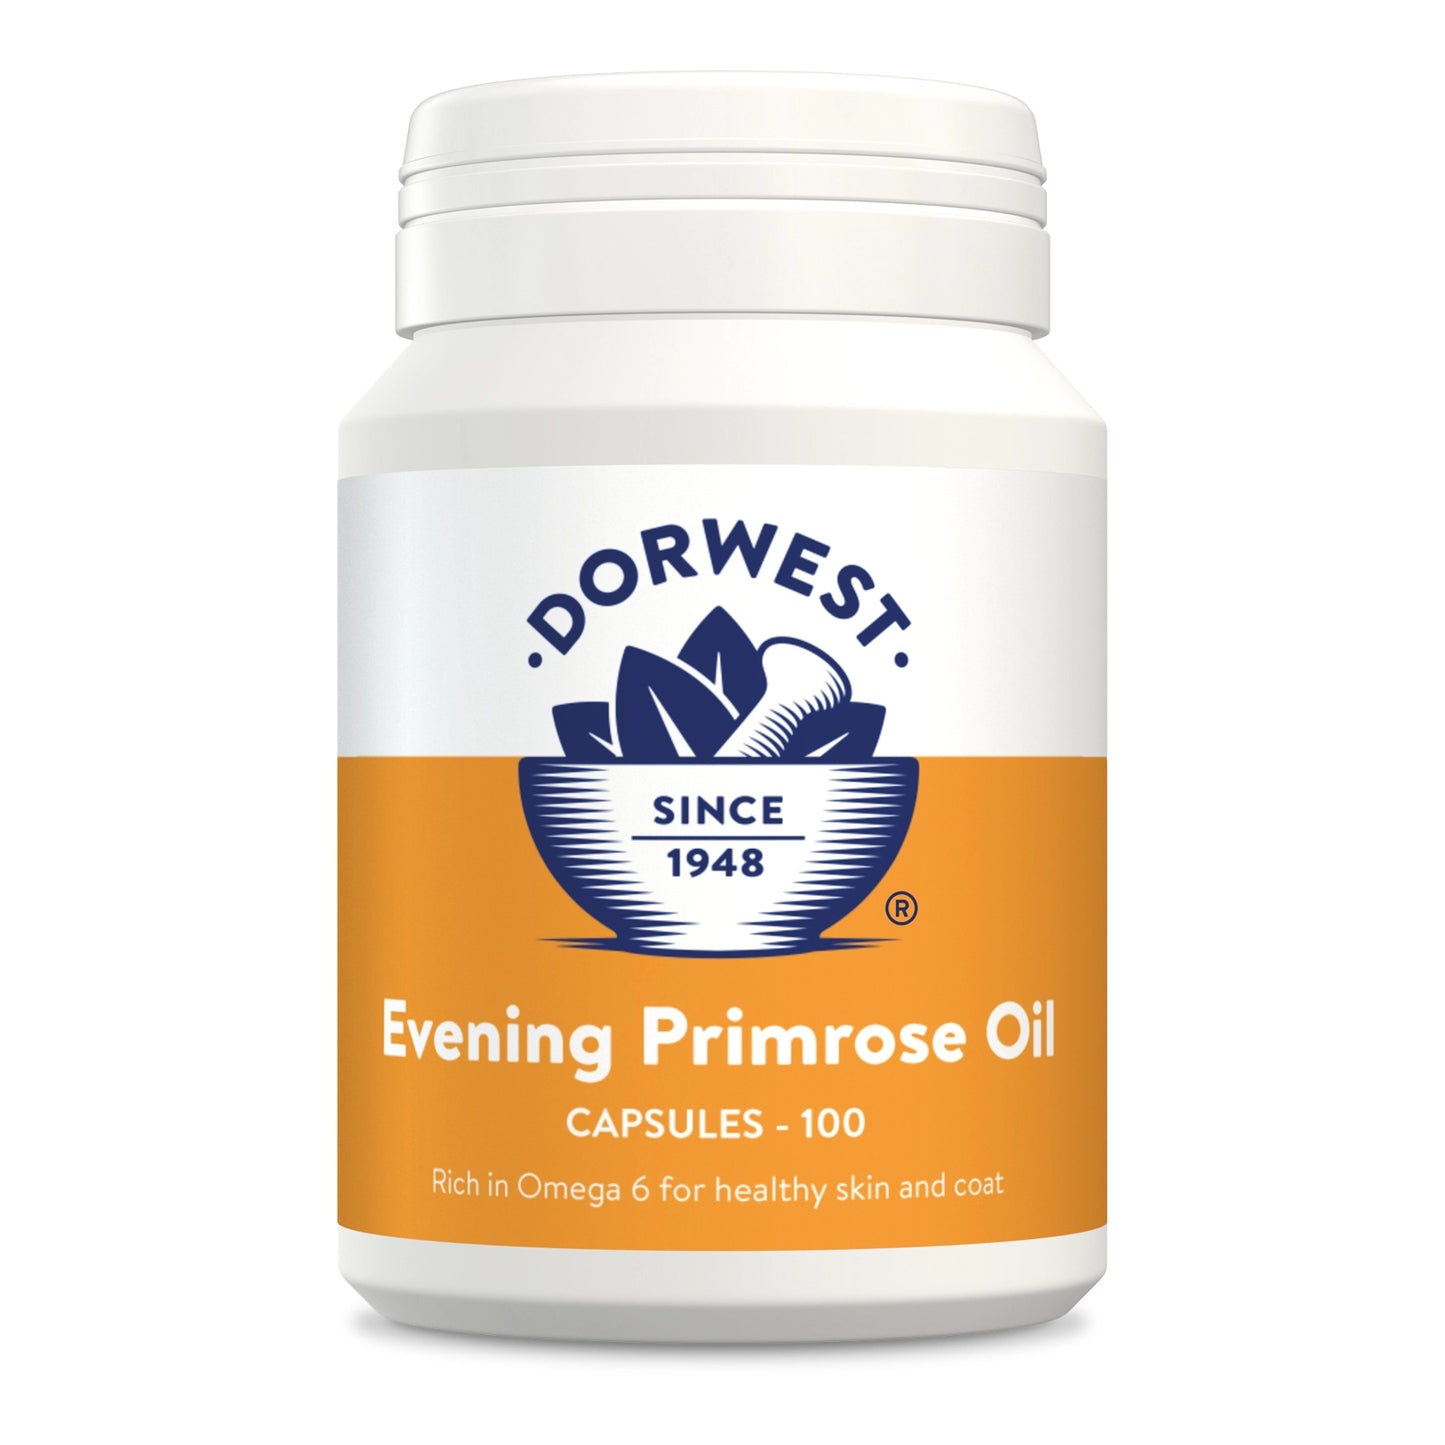 Dorwest Evening Primrose Oil Tablets - 100 tablets